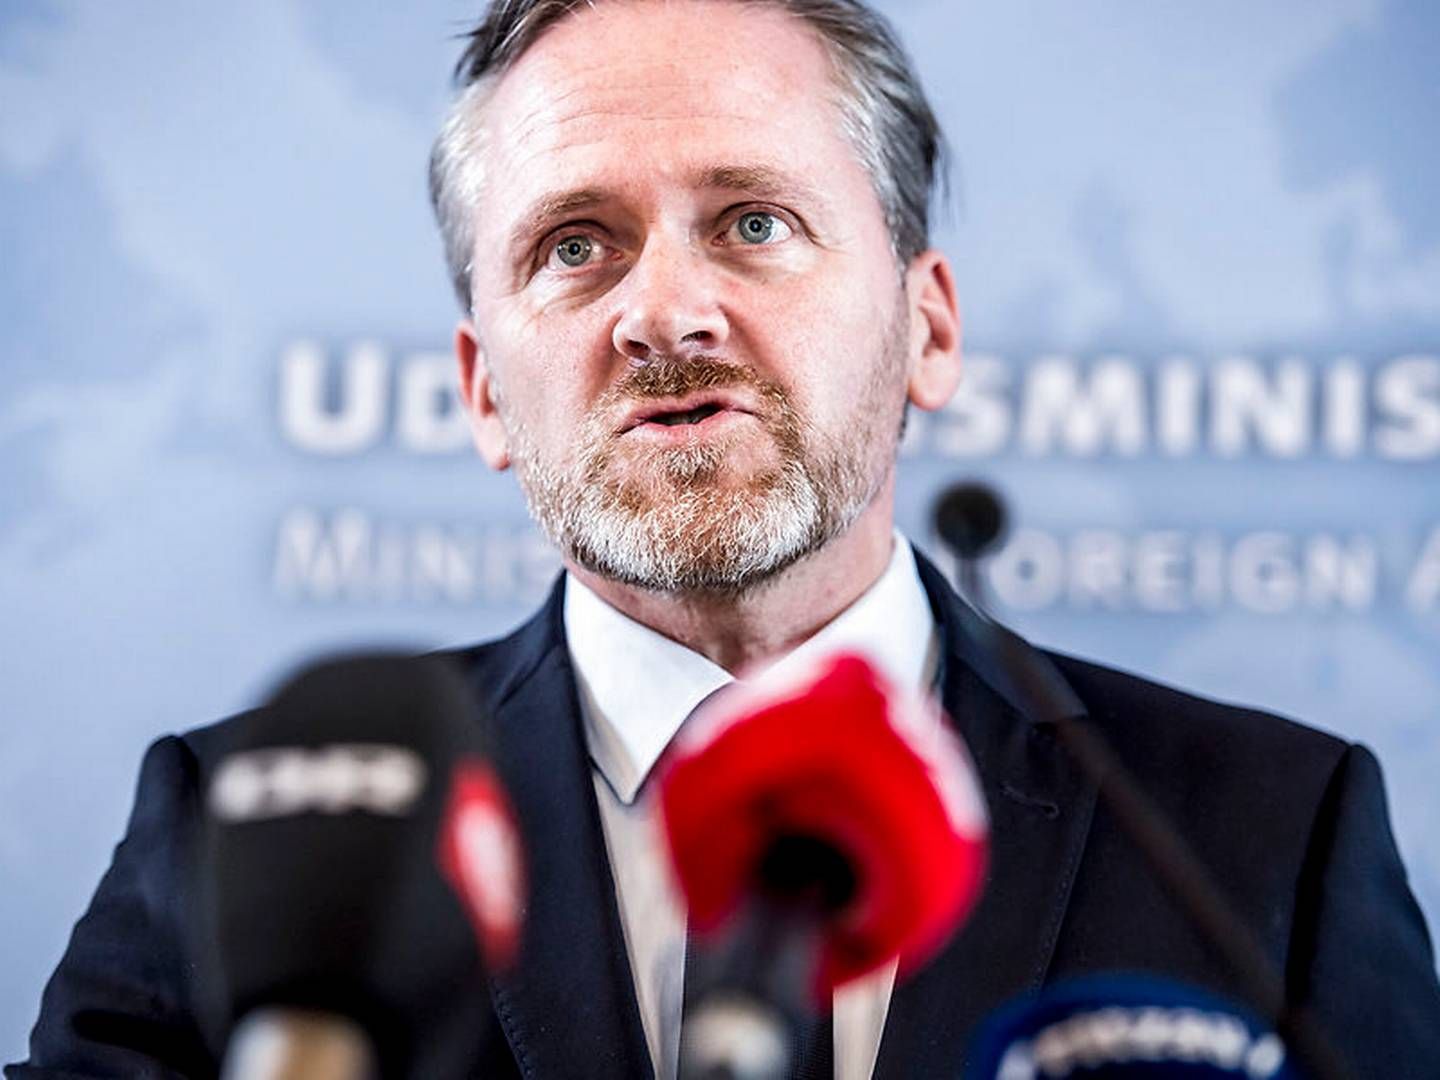 Udenrigsminister Anders Samuelsen (LA) frygter, at det vil ramme dansk eksport, hvis USA trækker sig fra WTO. | Foto: Mads Claus Rasmussen/Ritzau Scanpix